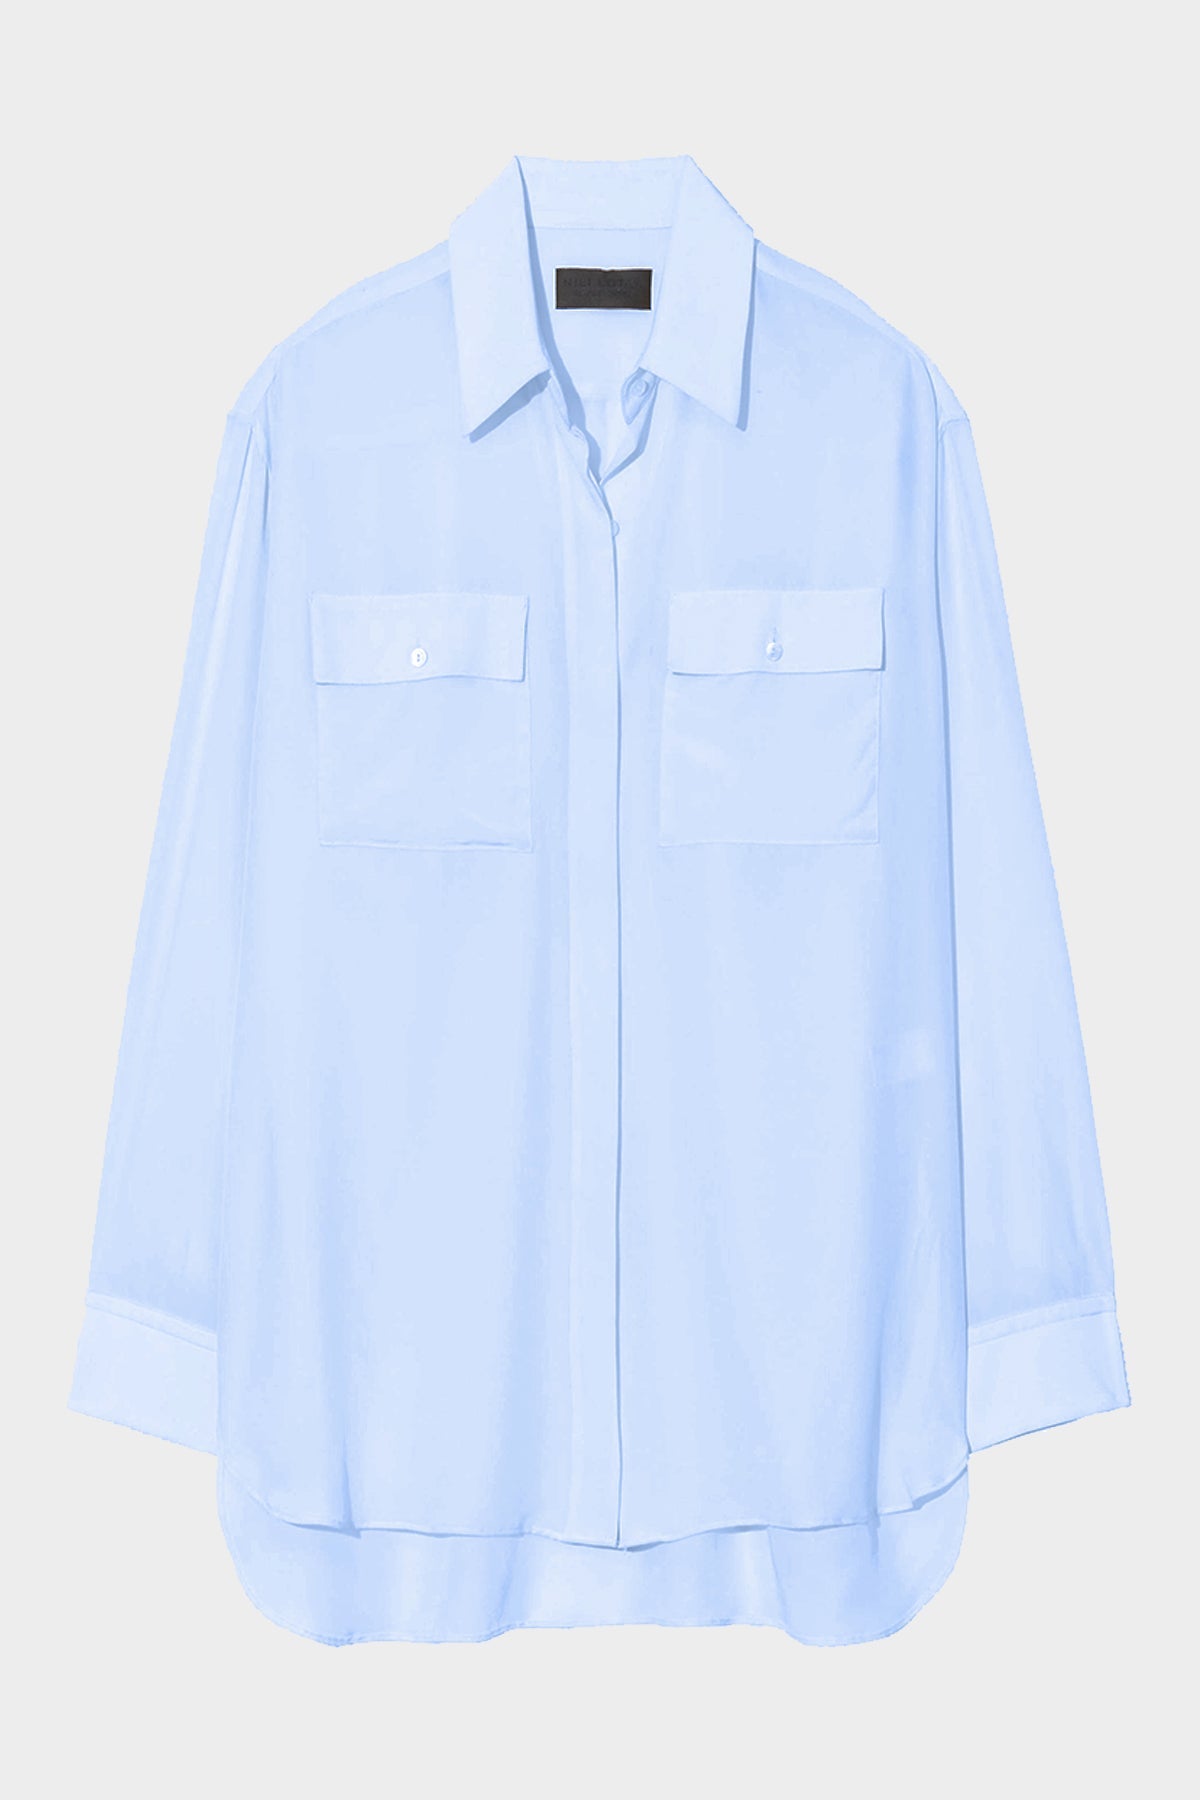 Ellias Shirt in Light Blue - shop-olivia.com